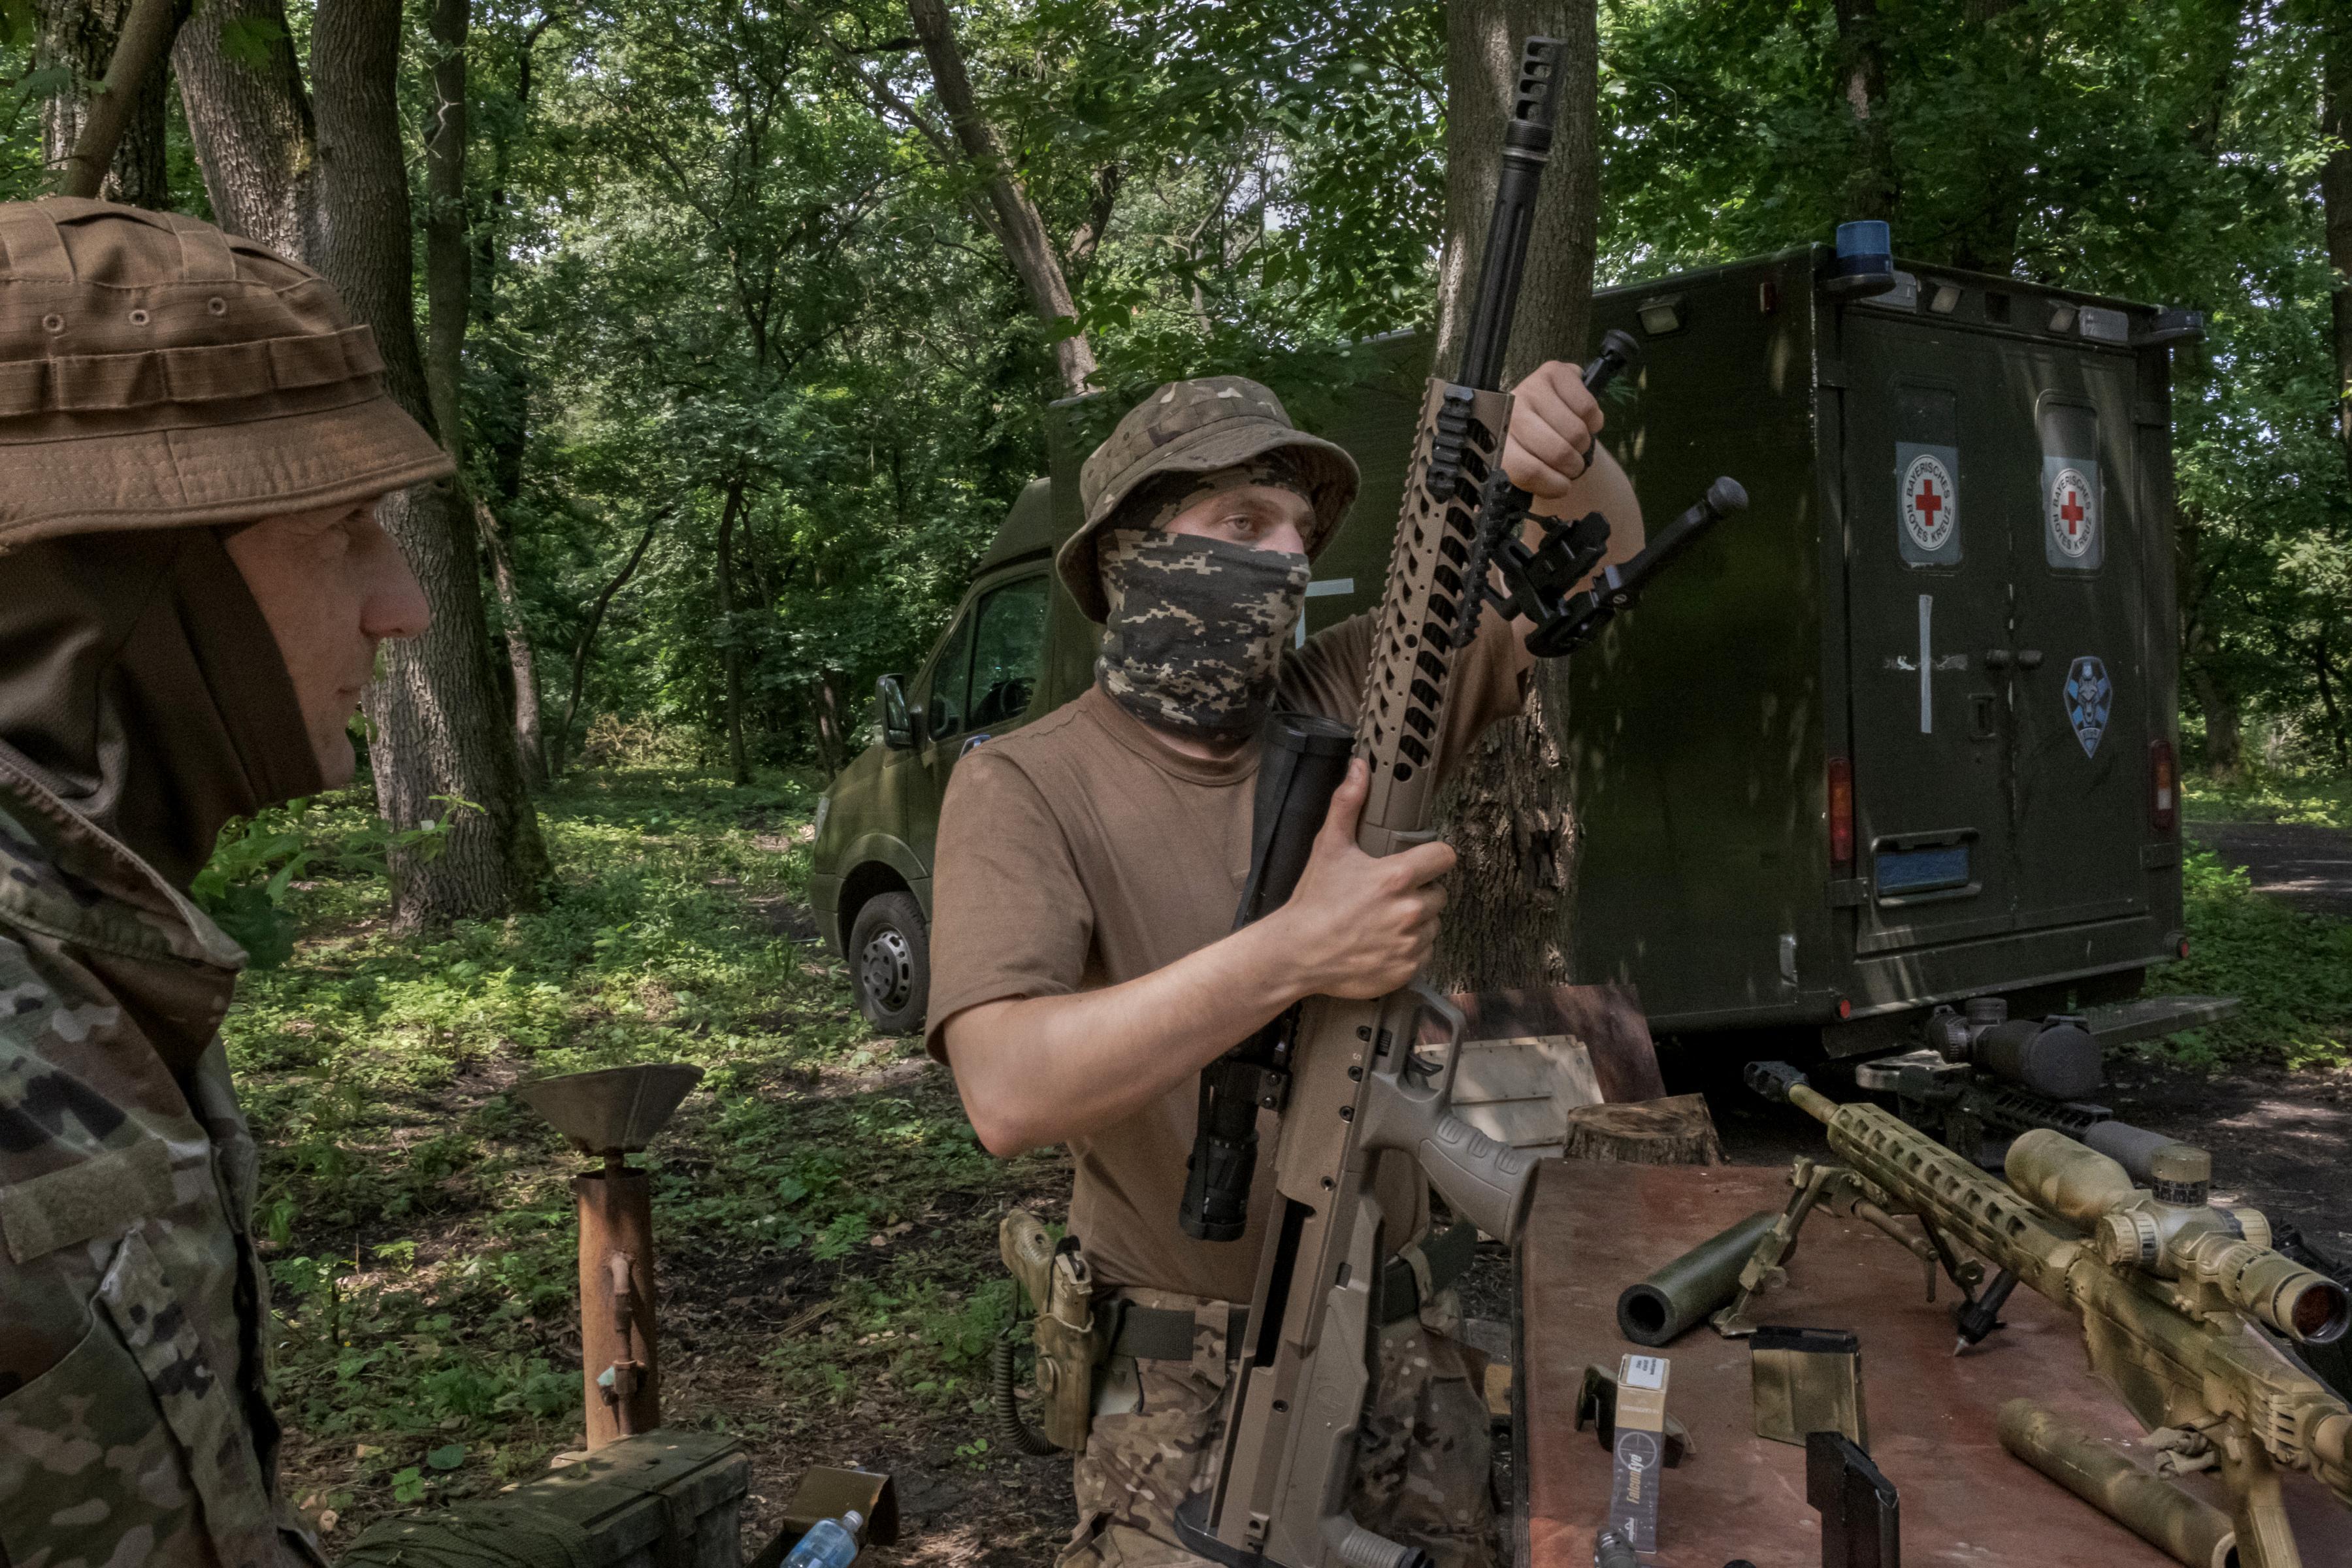 Encontre o sniper': Ucrânia desafia internautas a encontrarem atiradores de  elite camuflados - Fotos - R7 Internacional